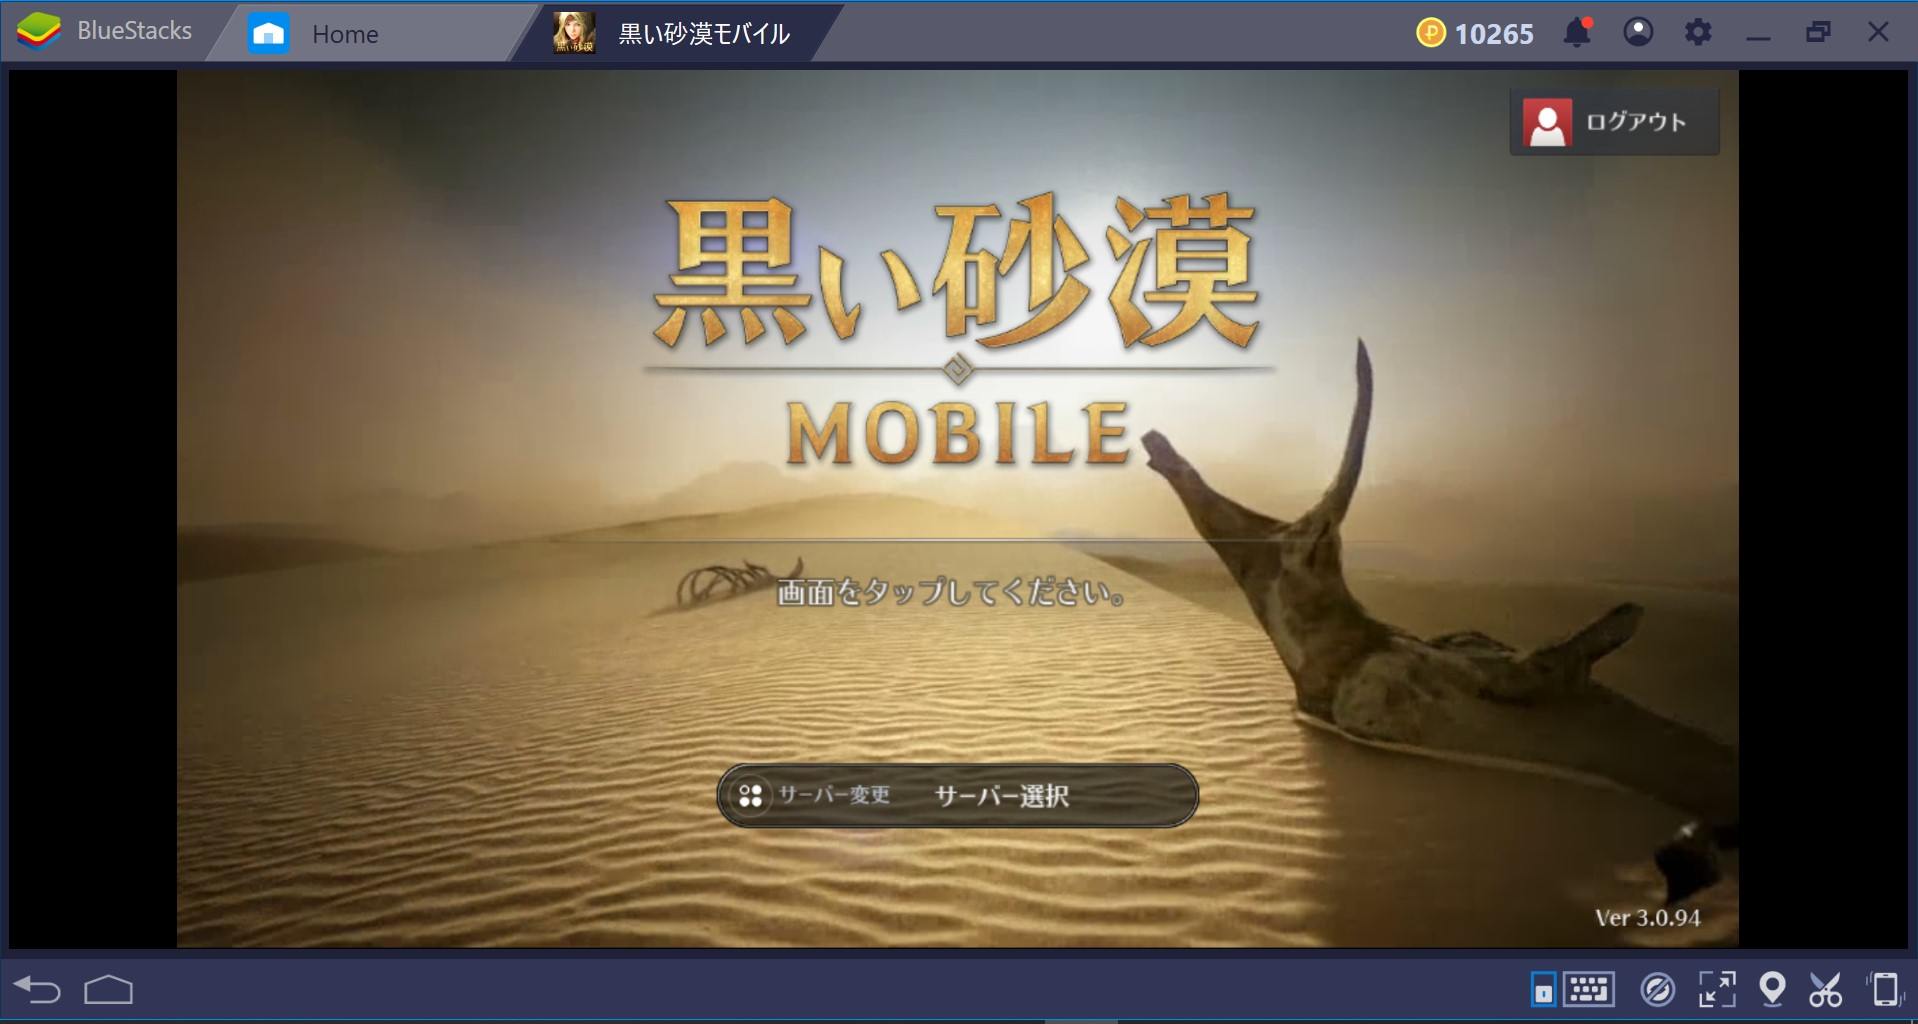 PC上で黒い砂漠Mobileを快適にプレイする方法